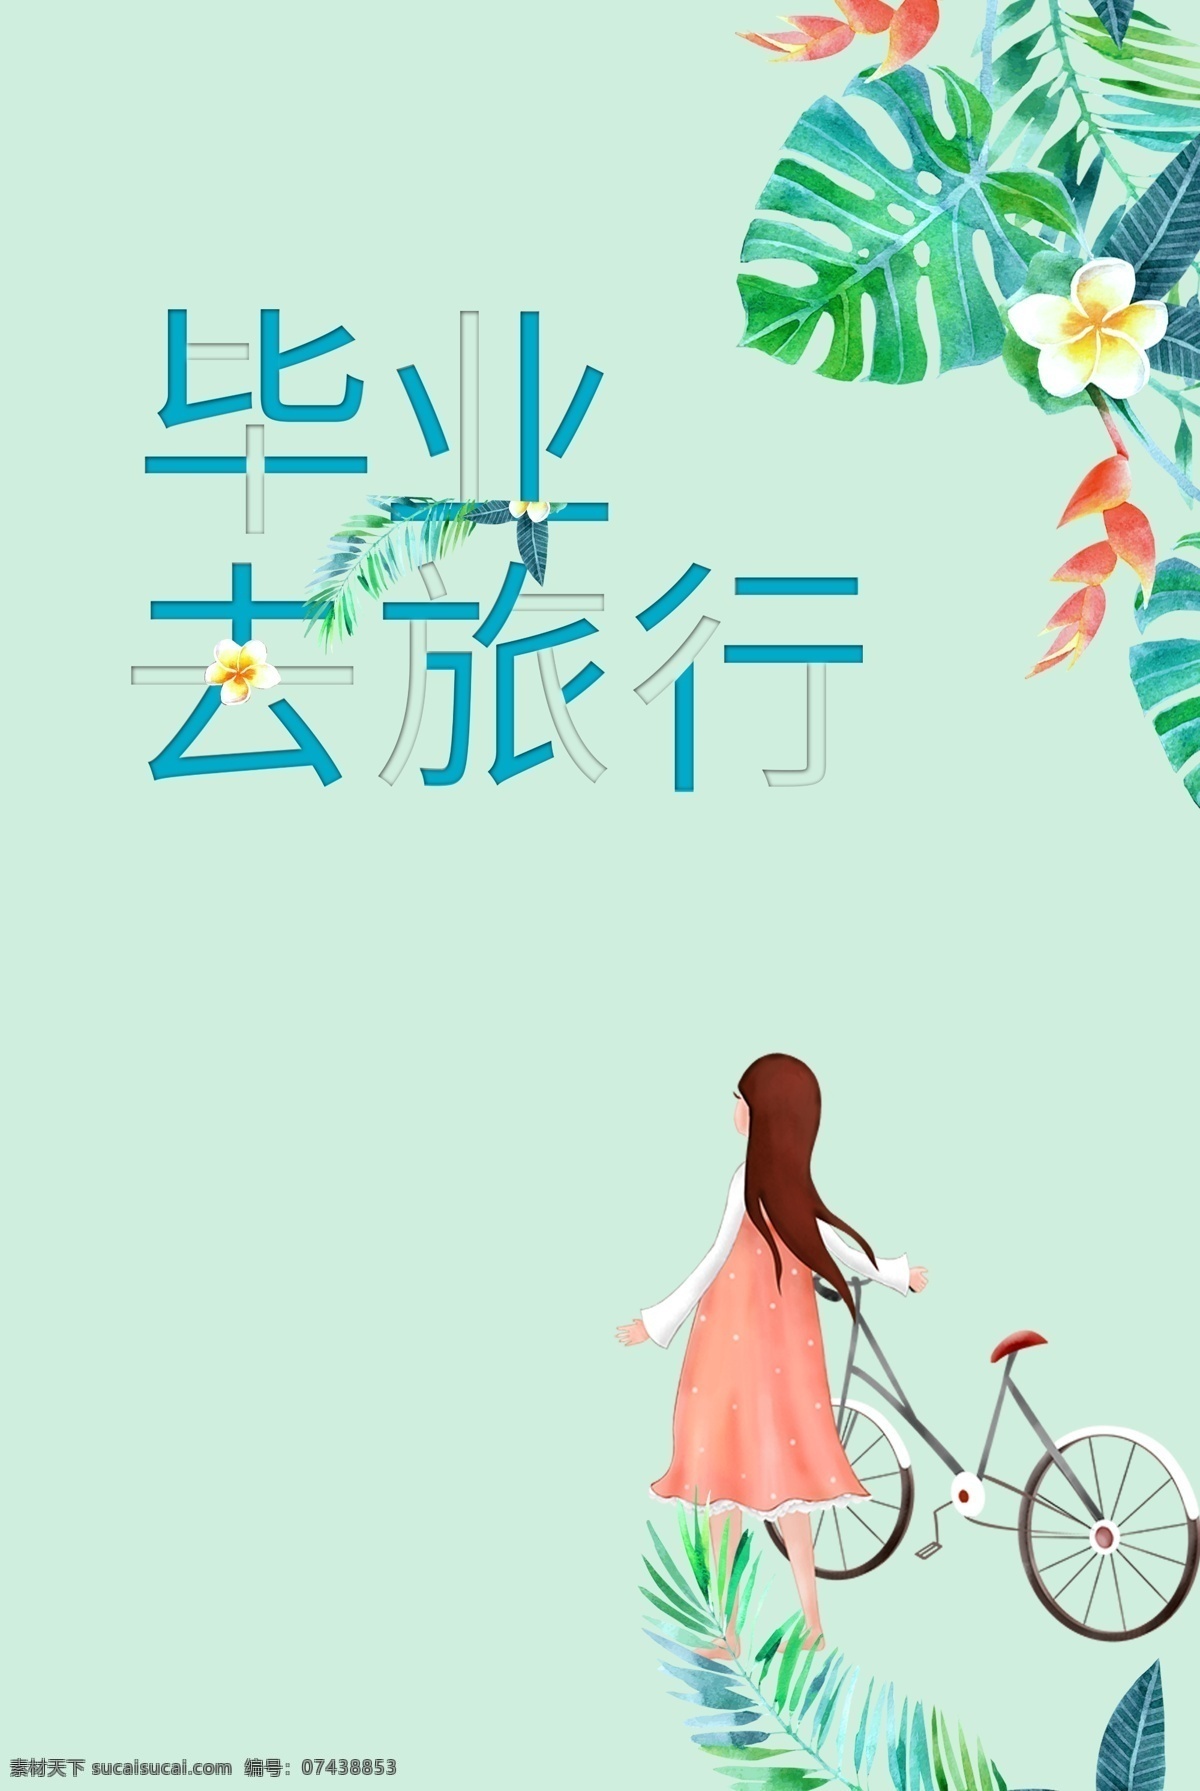 2019 毕业 单车 浪漫 旅行 单车背景 小女孩背景 浅蓝色背景 小清新背景